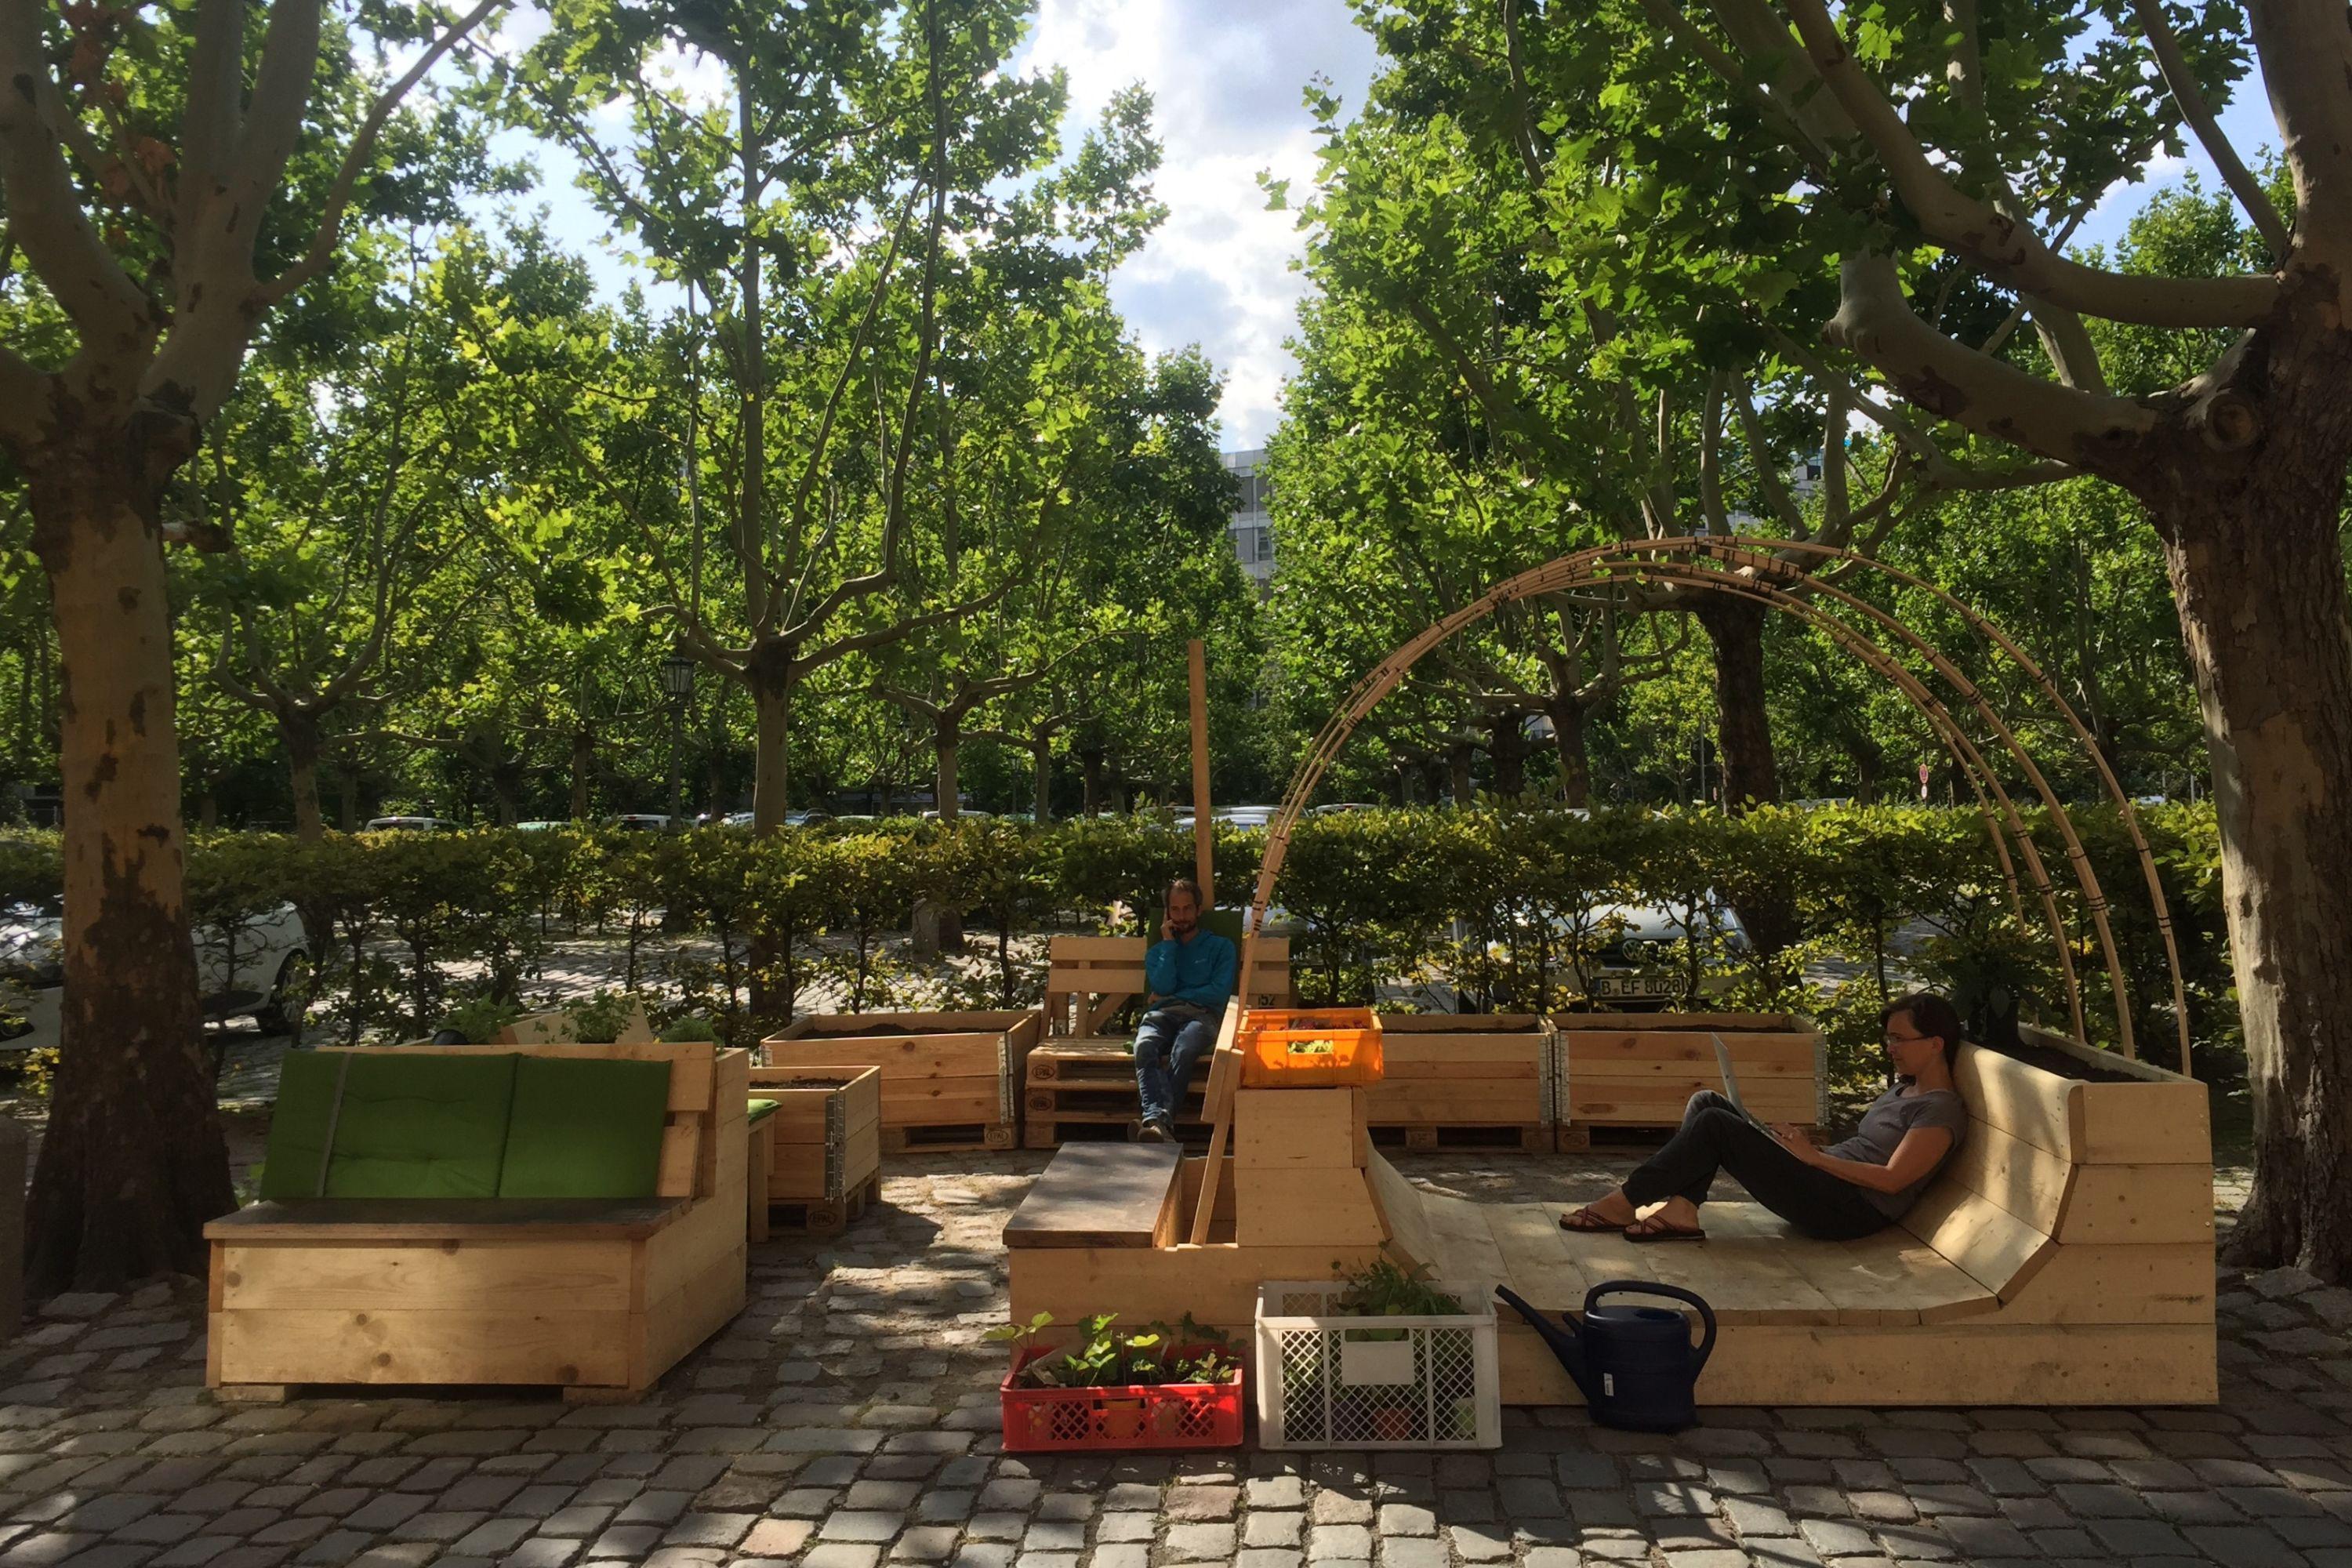 Parkplatzgarten am Gropius Bau mit Holzbänken, Liege- und Sitzmöglichkeiten sowie Pflanzenbeeten.